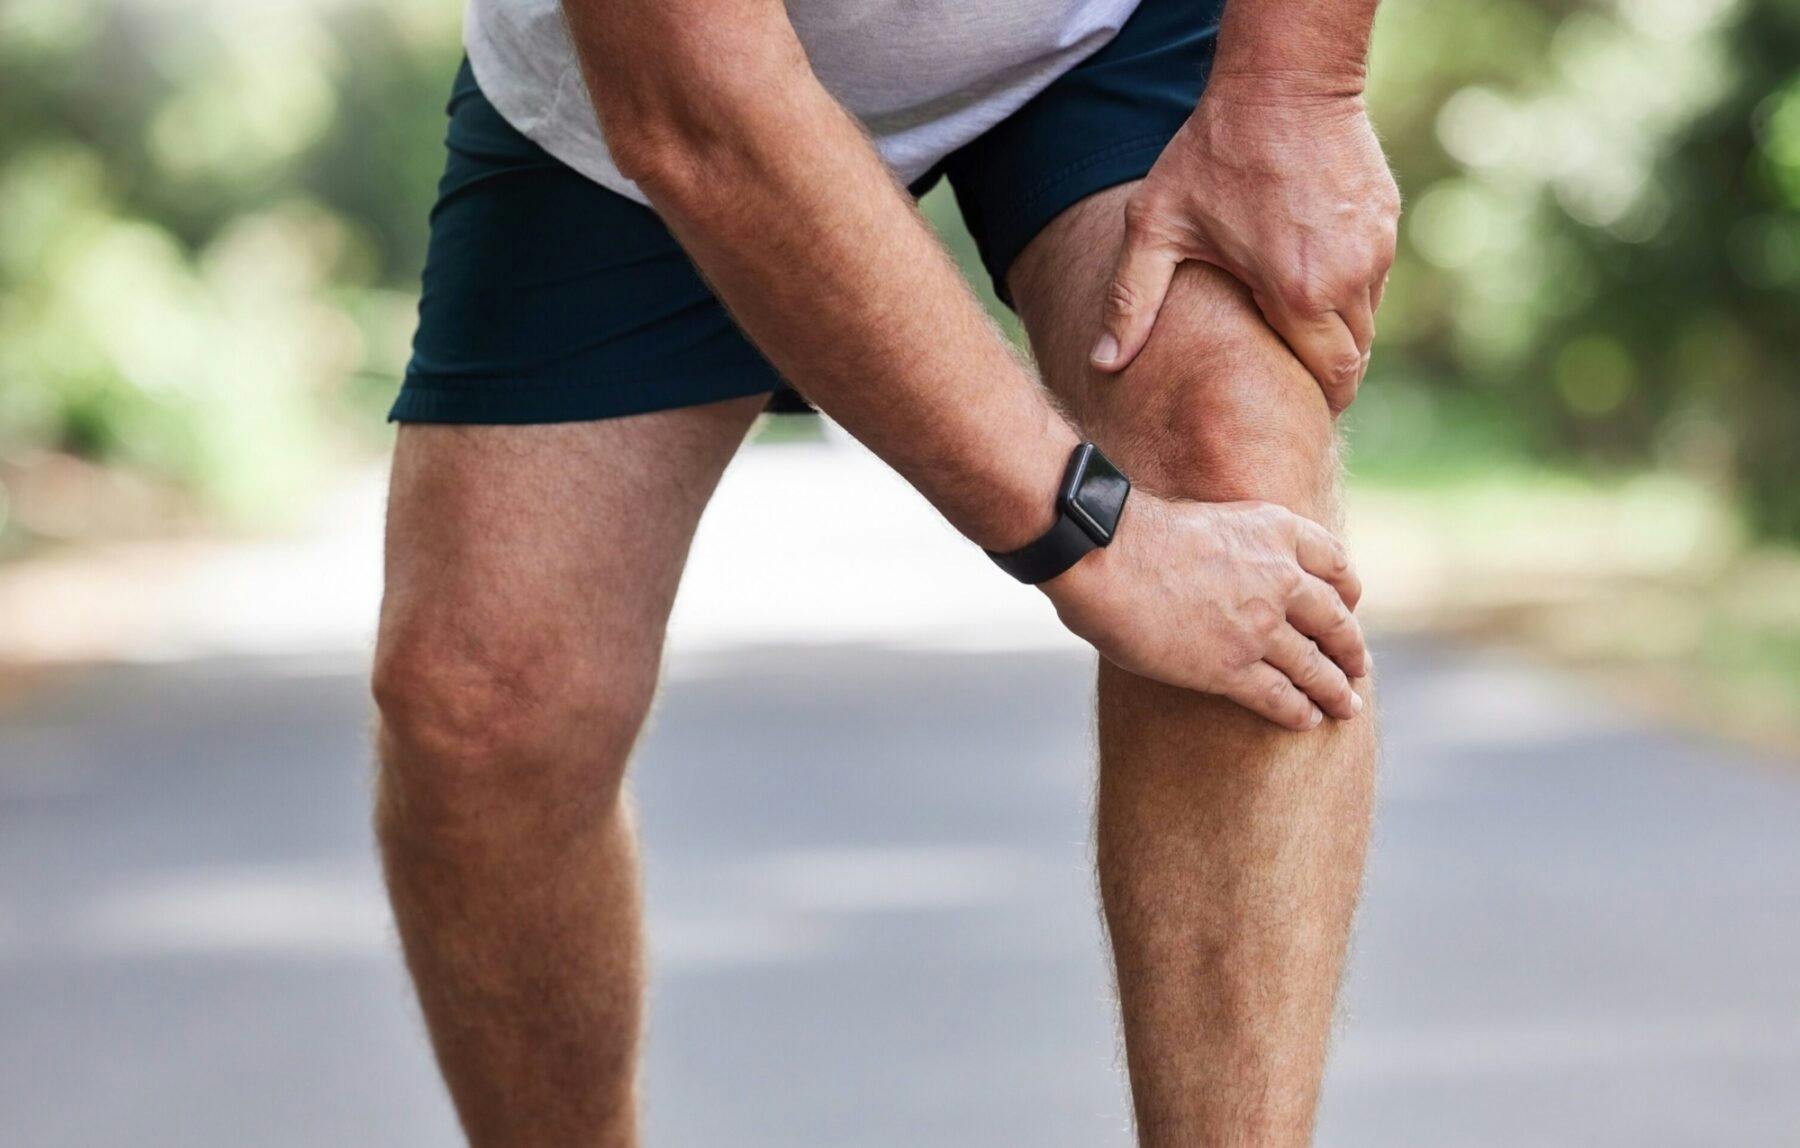 a senior runner with knee osteoarthritis pain